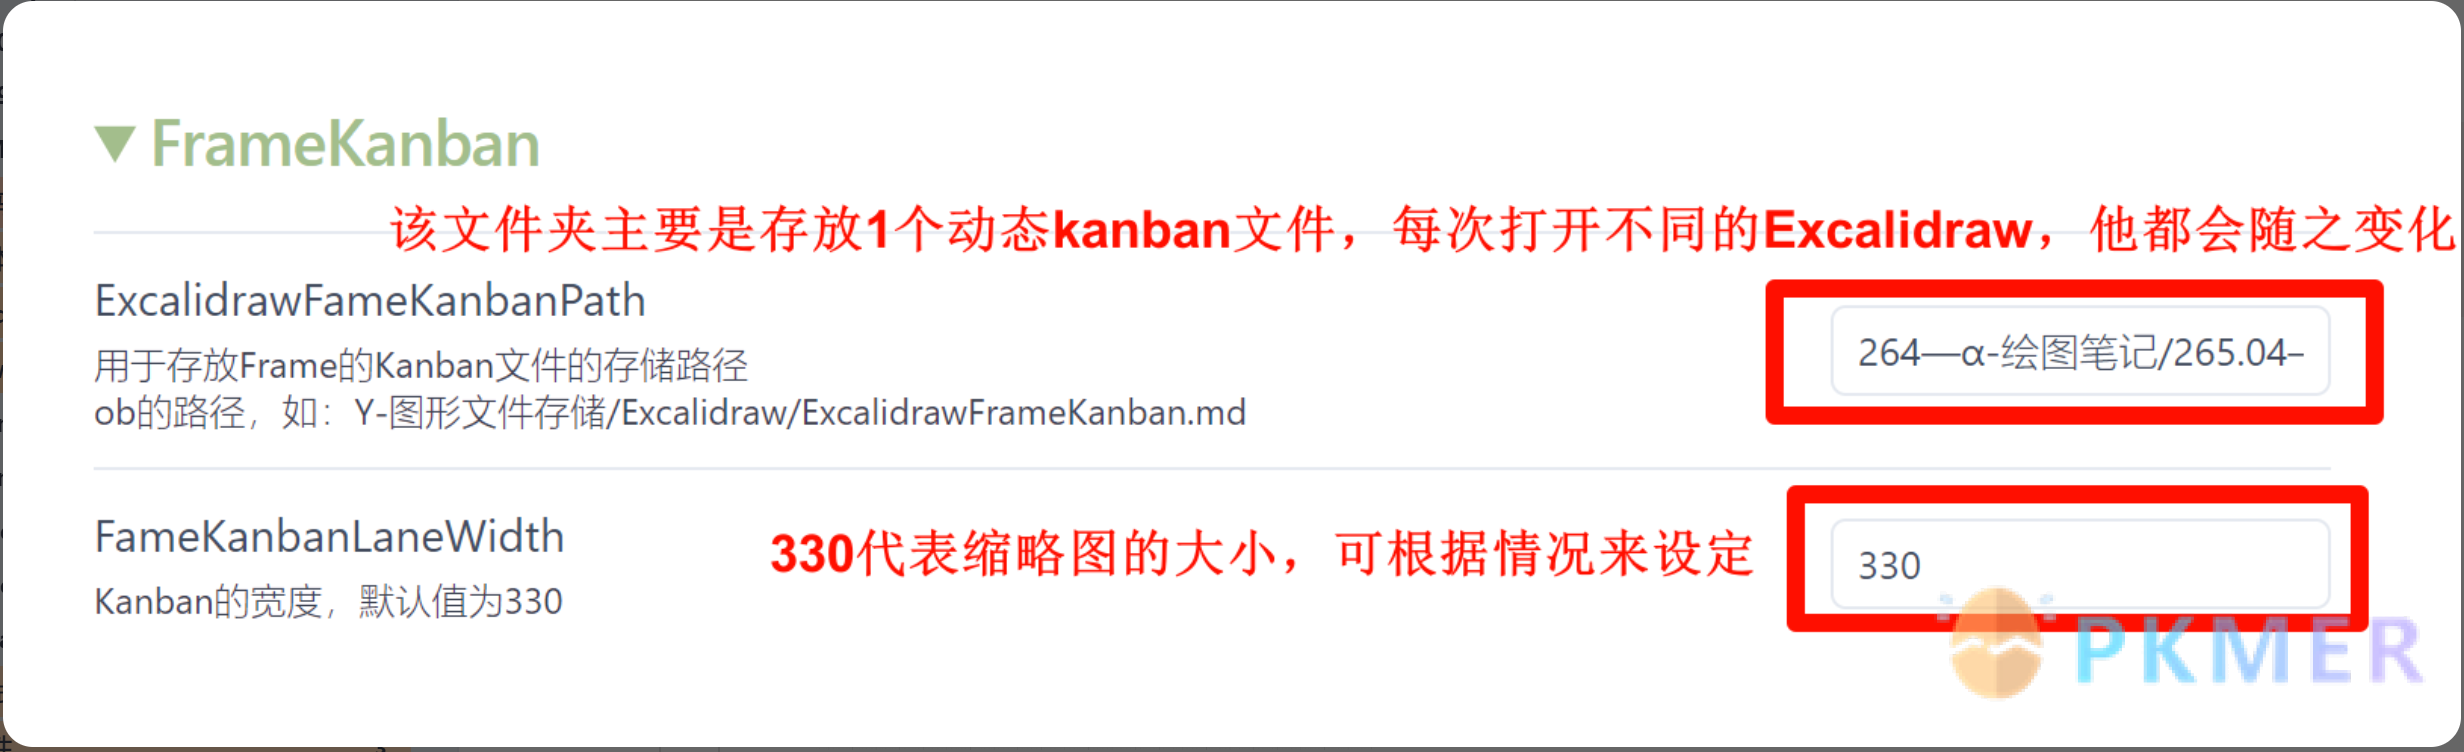 自定义 Excalidraw 脚本 - 画板与 Kanban 得梦幻结合 - 像 PPT 一样演示--使用用法